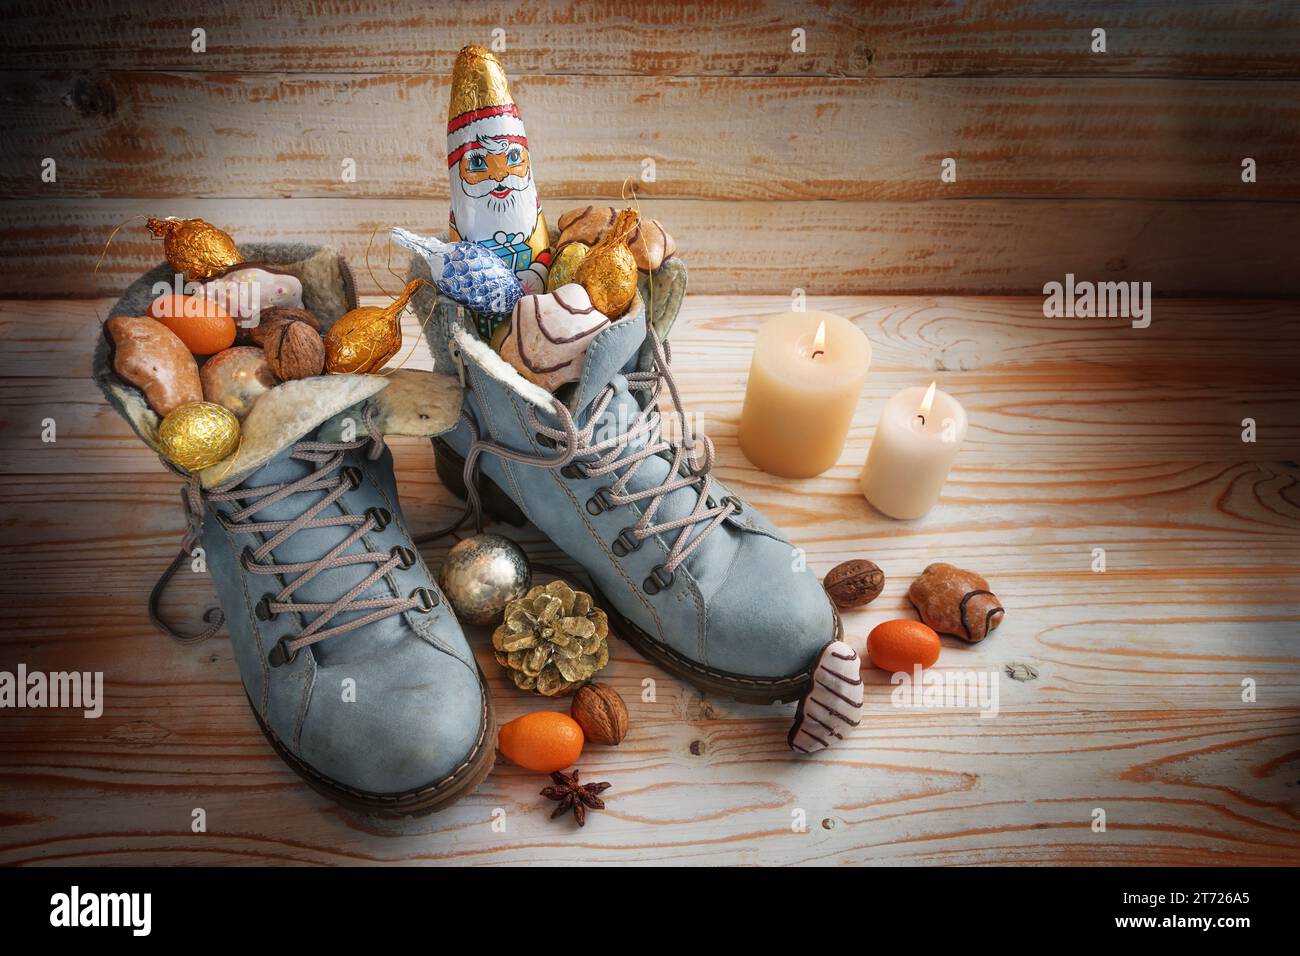 Stiefel gefüllt mit Süßigkeiten, Schokolade Santa und Weihnachtsdekoration auf hölzernem Hintergrund mit Kerzen, Tradition auf dem deutschen Nikolaus Tag, was Nicho bedeutet Stockfoto